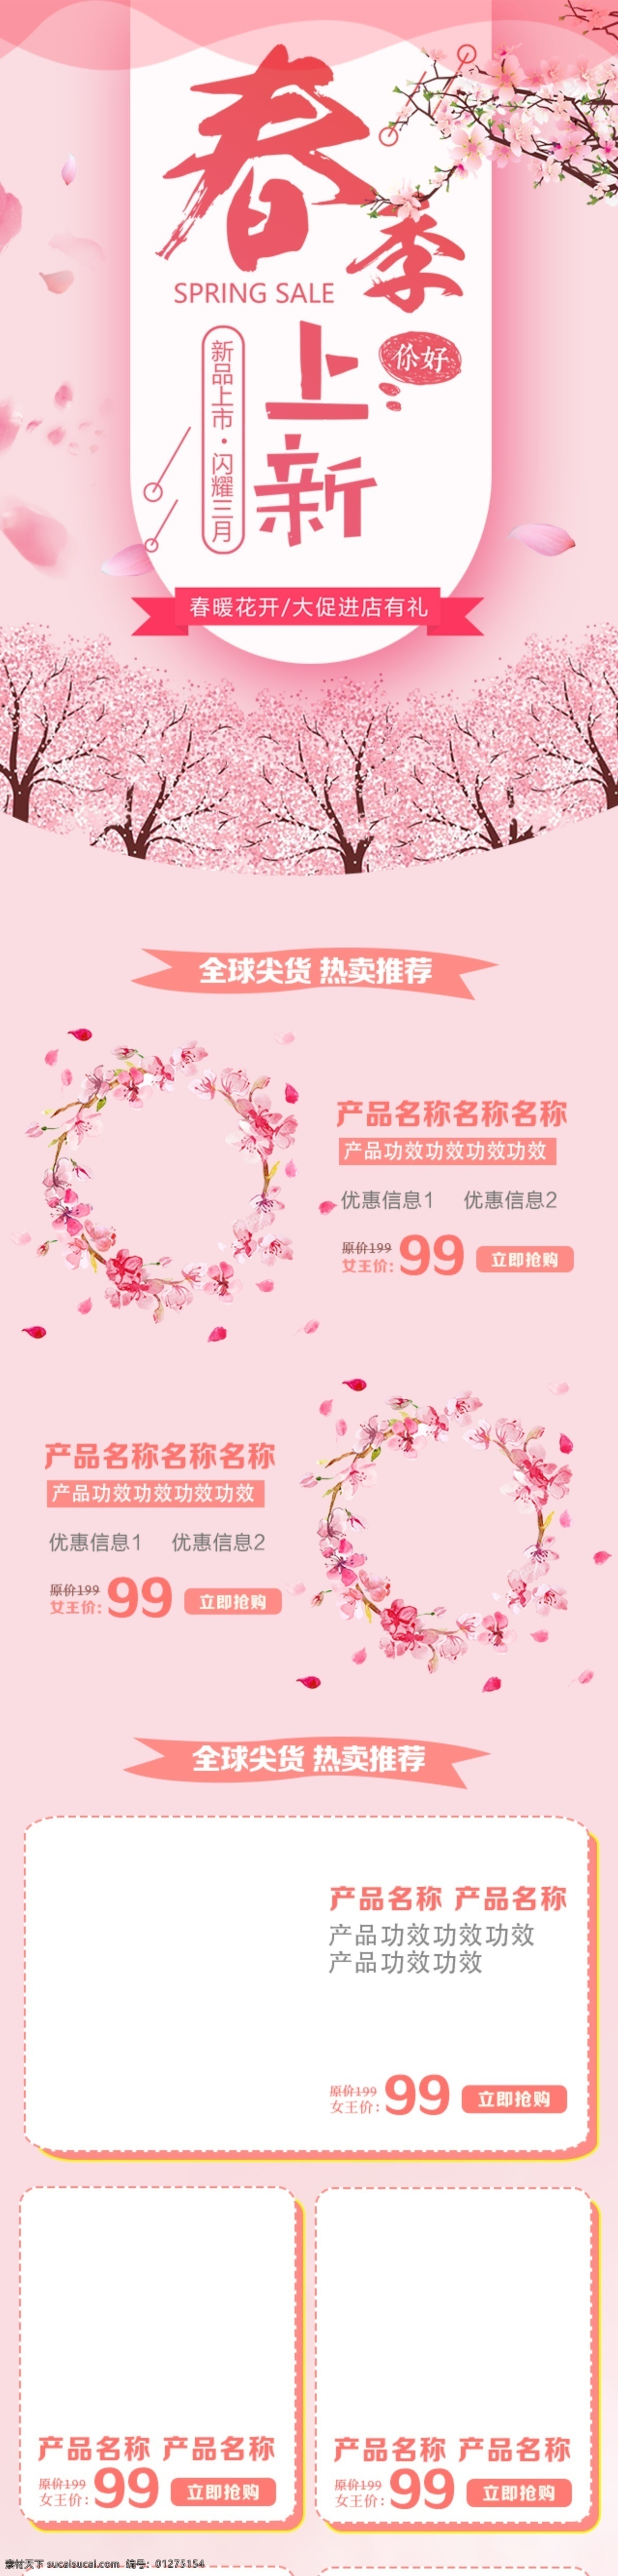 唯美 浪漫 鲜花 桃树 手机 端 首页 模板 闪耀 三月 粉色 背景 手机端 网店素材